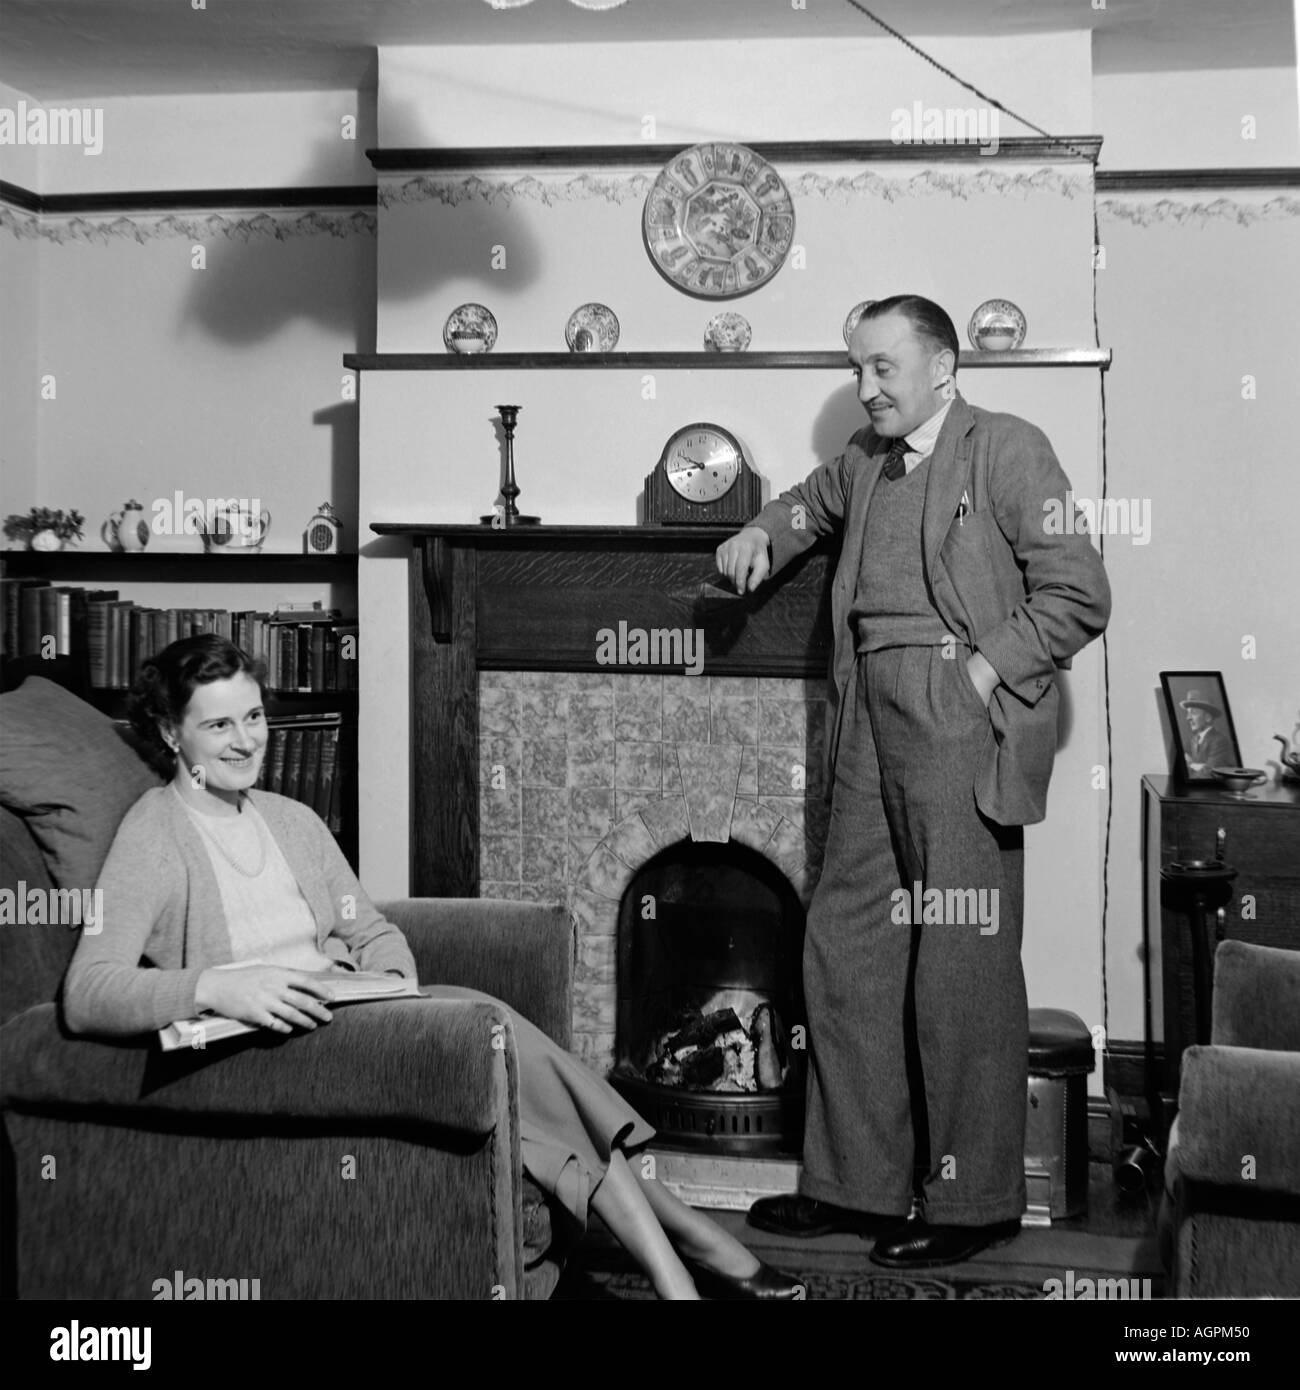 OLD VINTAGE SNAPSHOT FAMILLE PHOTOGRAPHIE DE MAN LEANING ON cheminée à la femme assise au fauteuil de lecture SALON DU LIVRE Banque D'Images